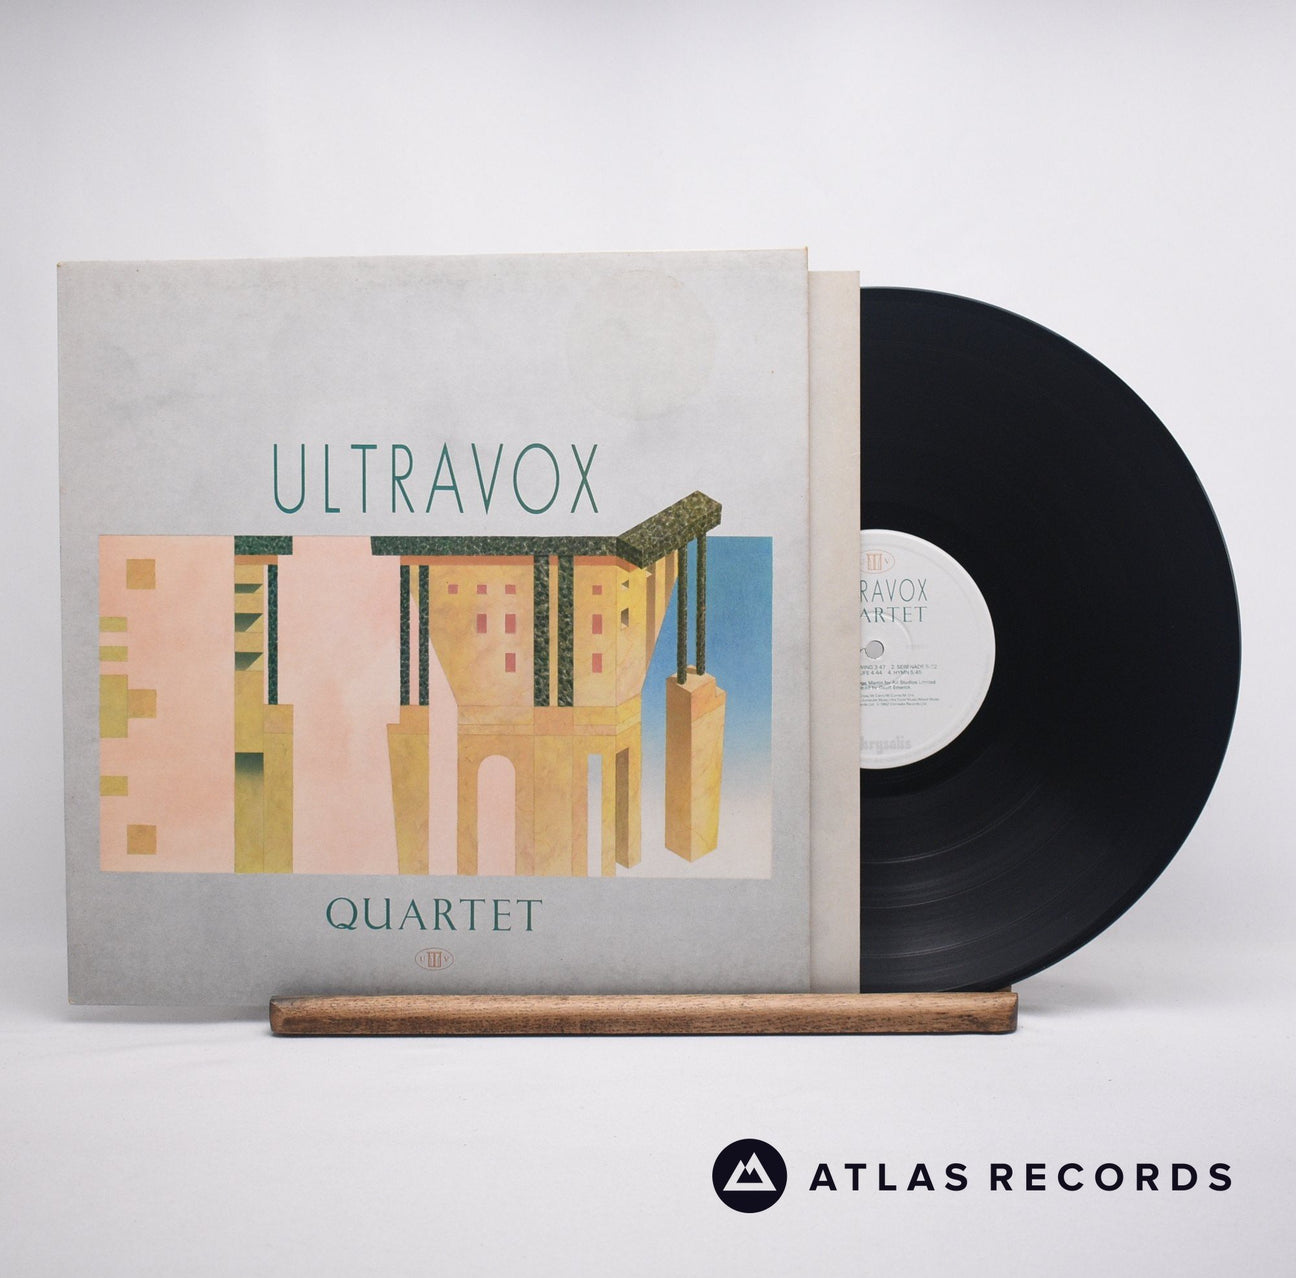 Ultravox Quartet LP Vinyl Record - Front Cover & Record